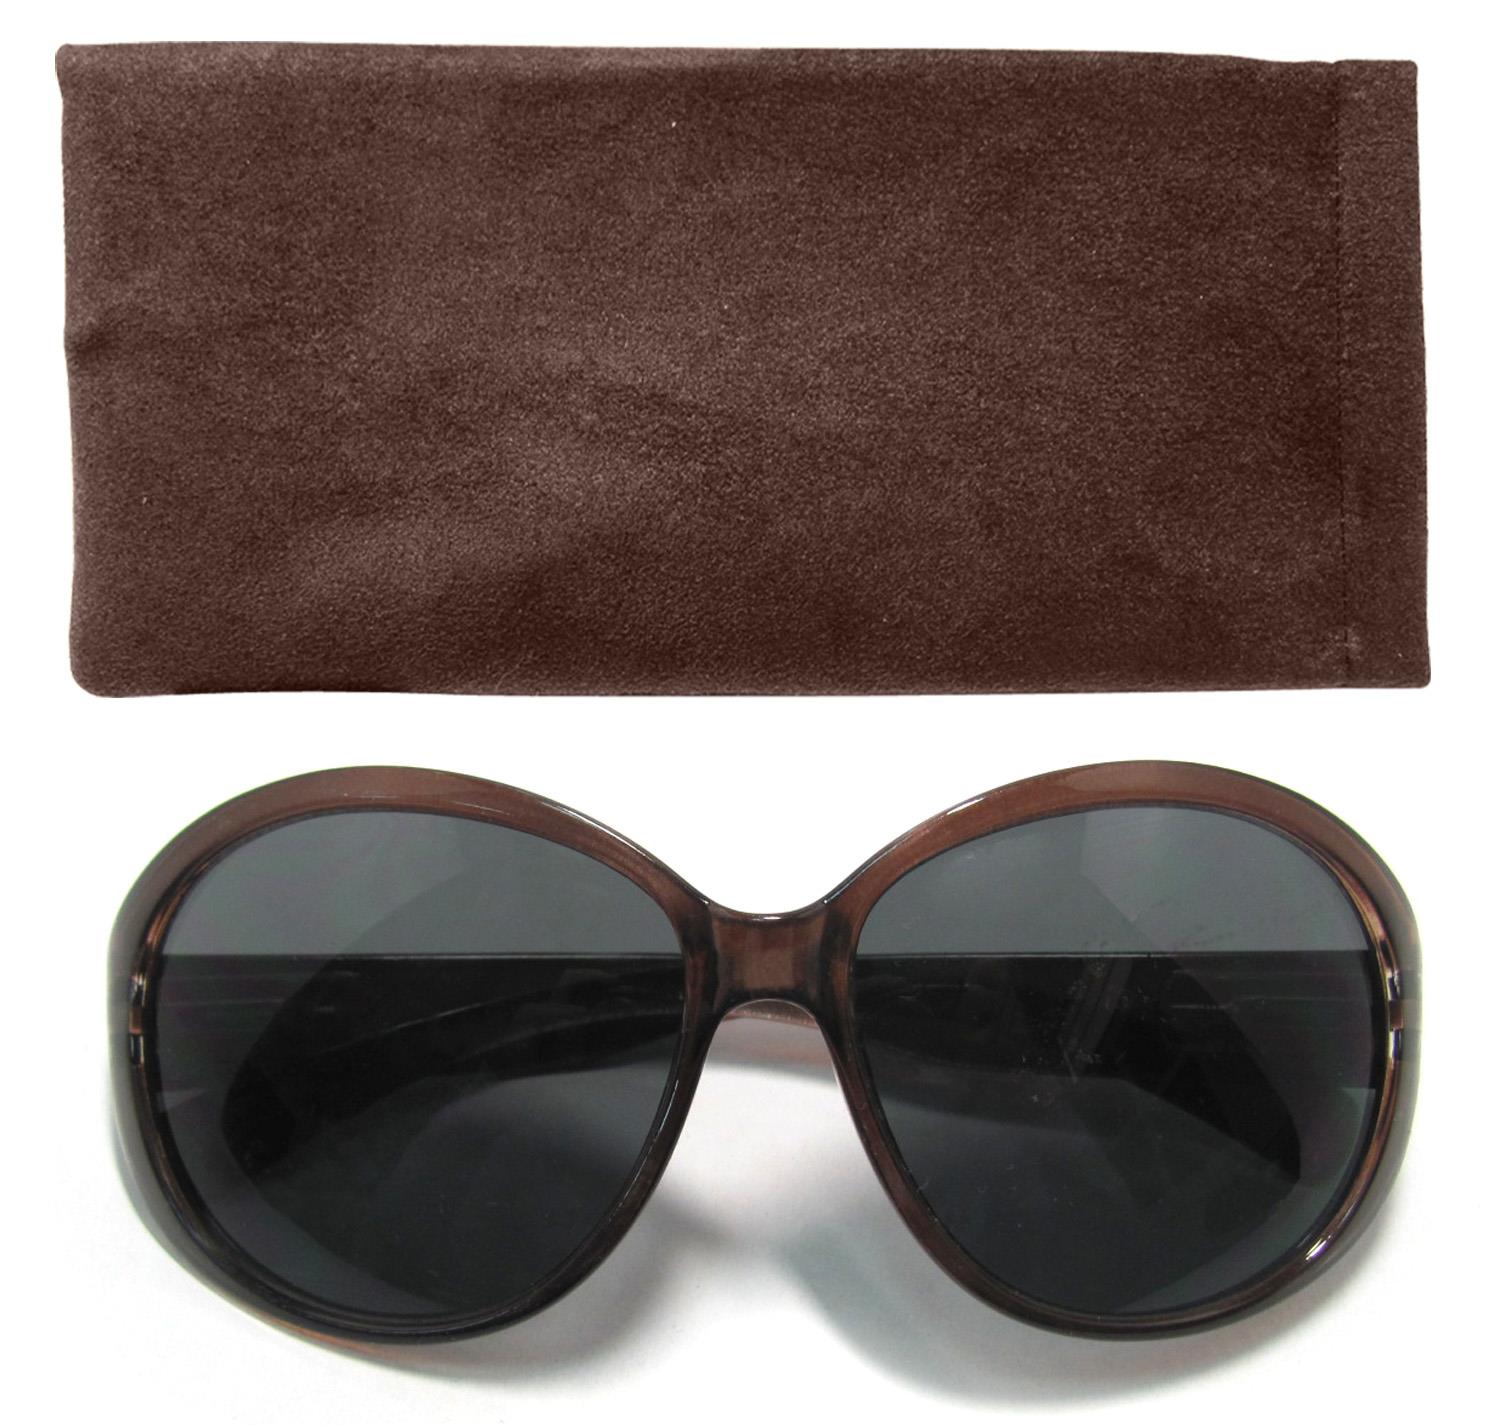 Damen-Sonnenbrille, Sonnen-Schutz mit UV-400-Schutz, Etui im passenden Design, Strand-Brille